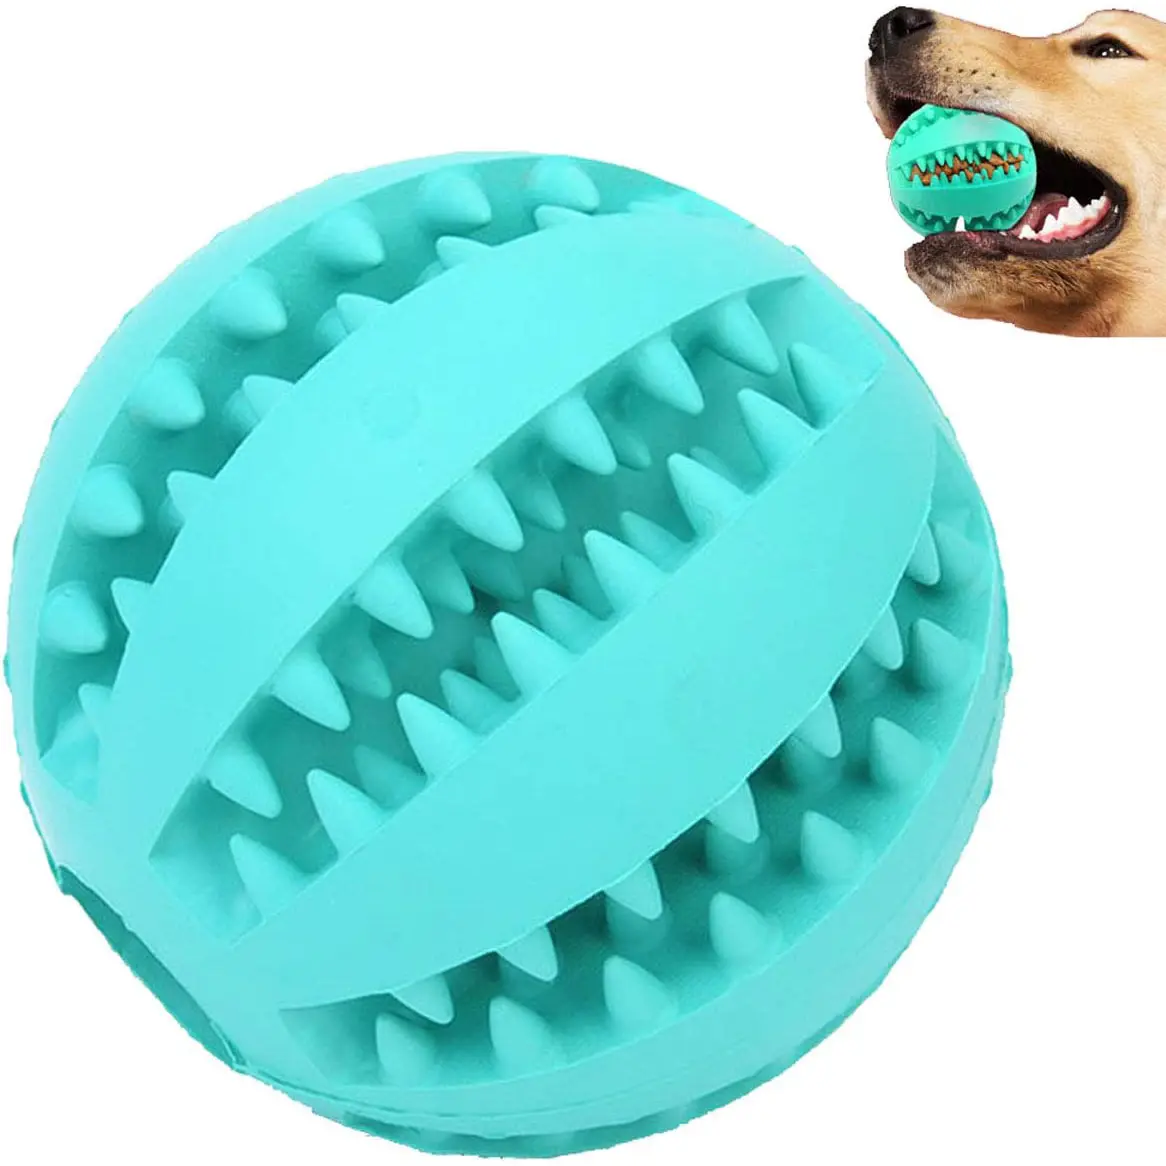 ניקוי שיני כלב לעיסוי לנשוך צעצועי כלב לחיות מחמד גומי לעיסה צעצועי כלבים חיות מחמד כדור